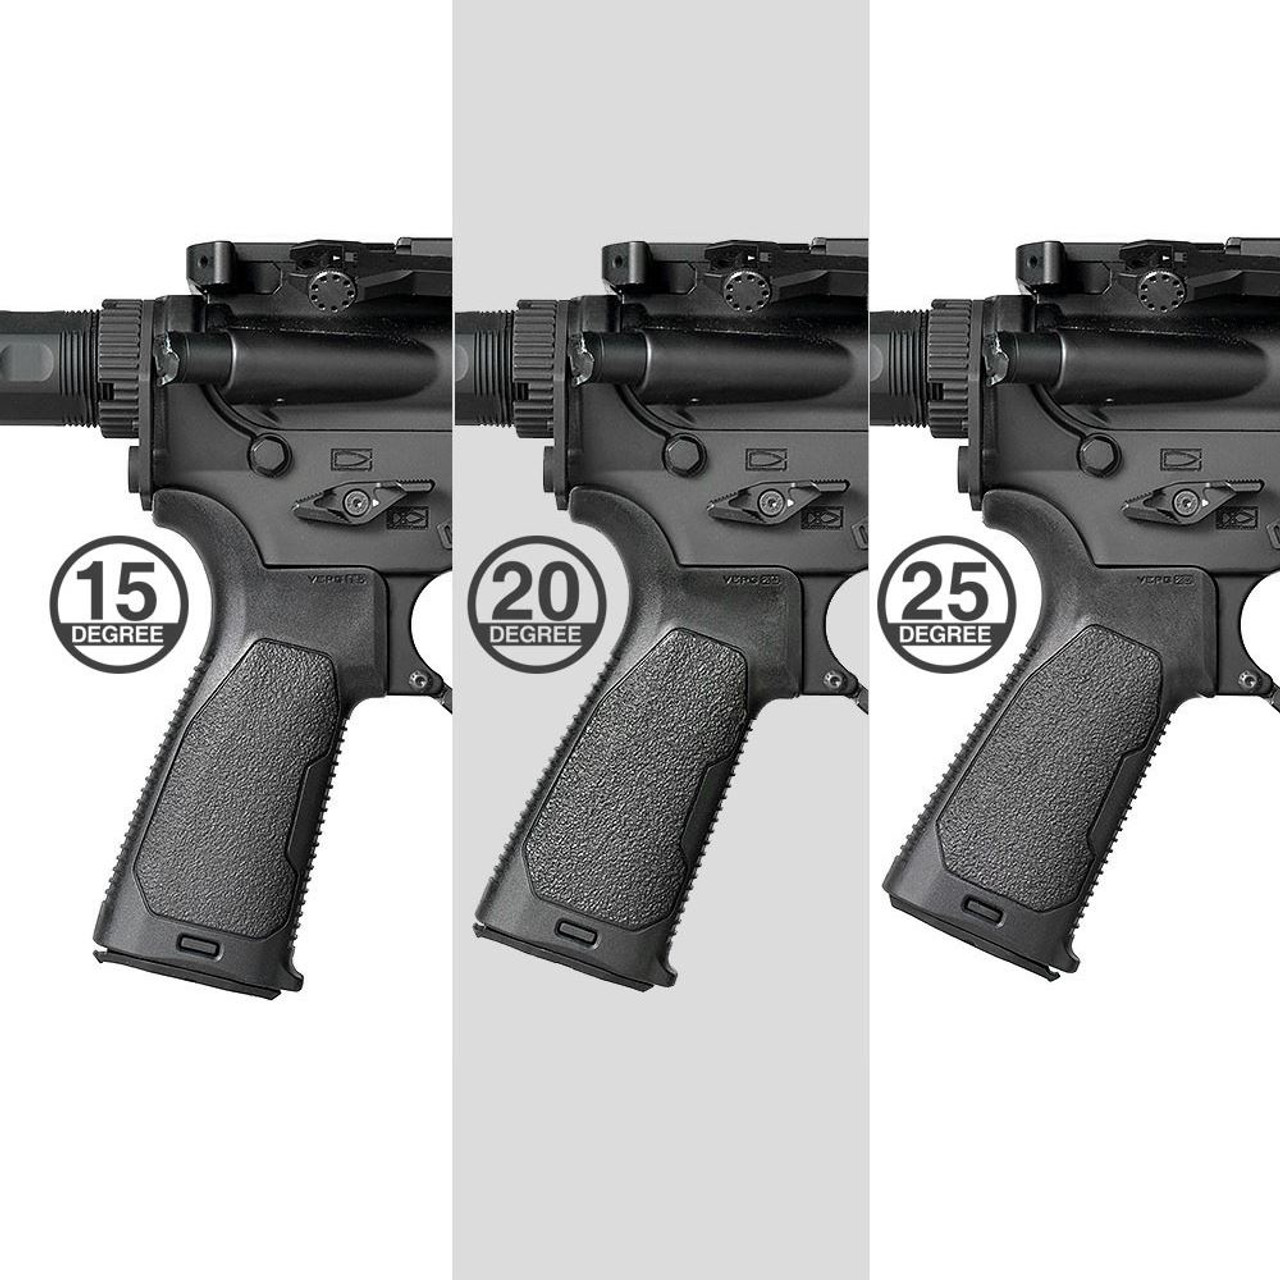 Strike Industries Viper 25 deg Enhanced Pistol Grip for AR-15 and